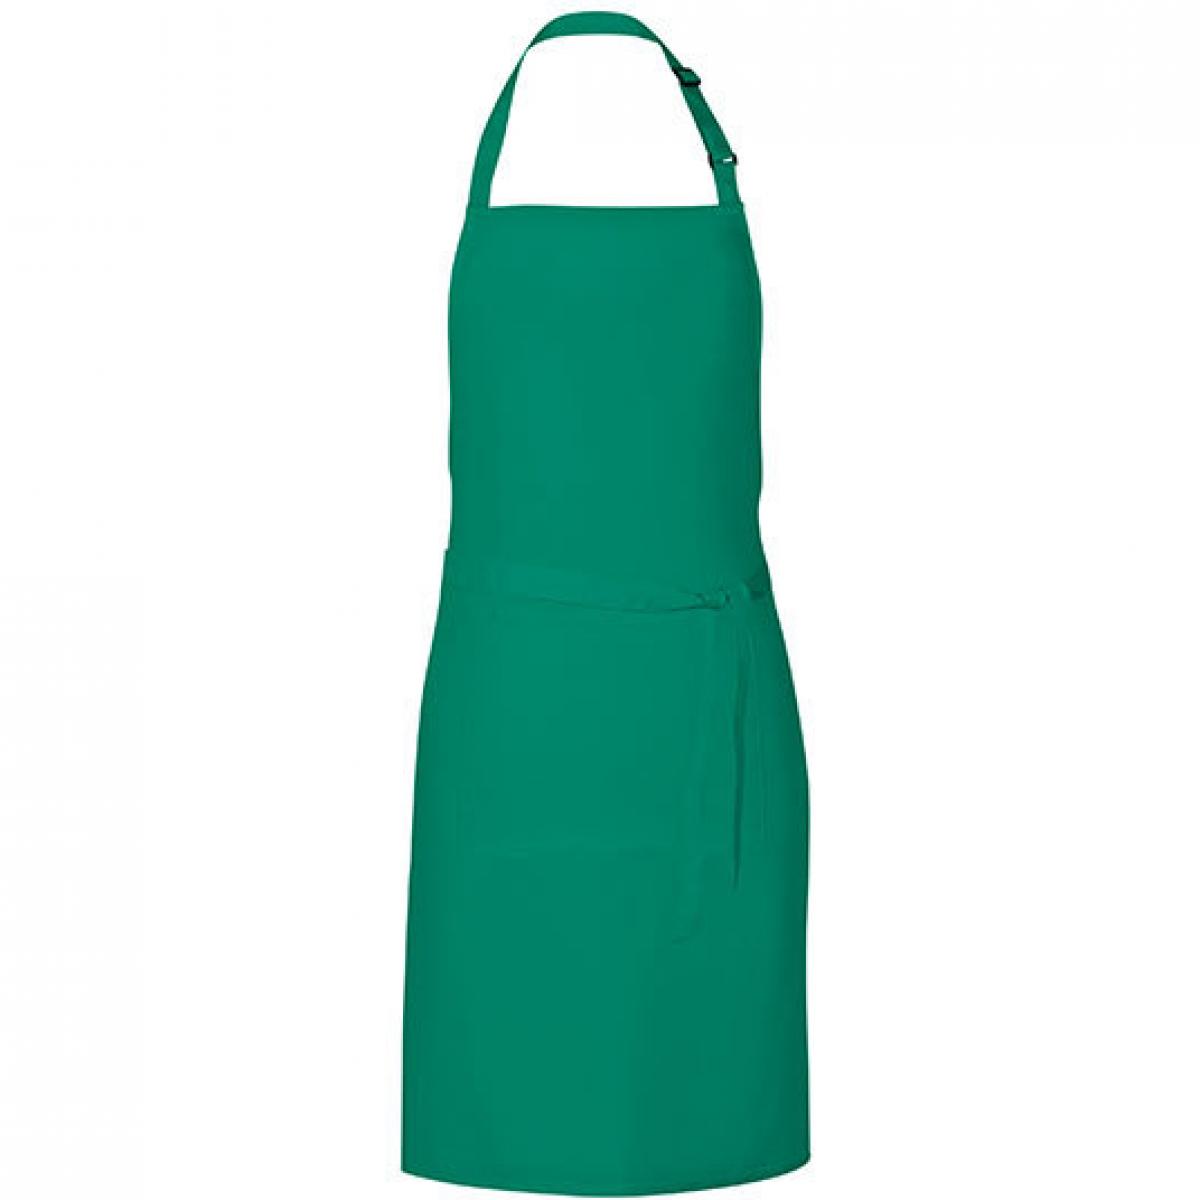 Hersteller: Link Kitchen Wear Herstellernummer: GS8572 Artikelbezeichnung: Grill Apron - 85 x 72 cm - Waschbar bis 60 °C Farbe: Emerald (ca. Pantone 341)